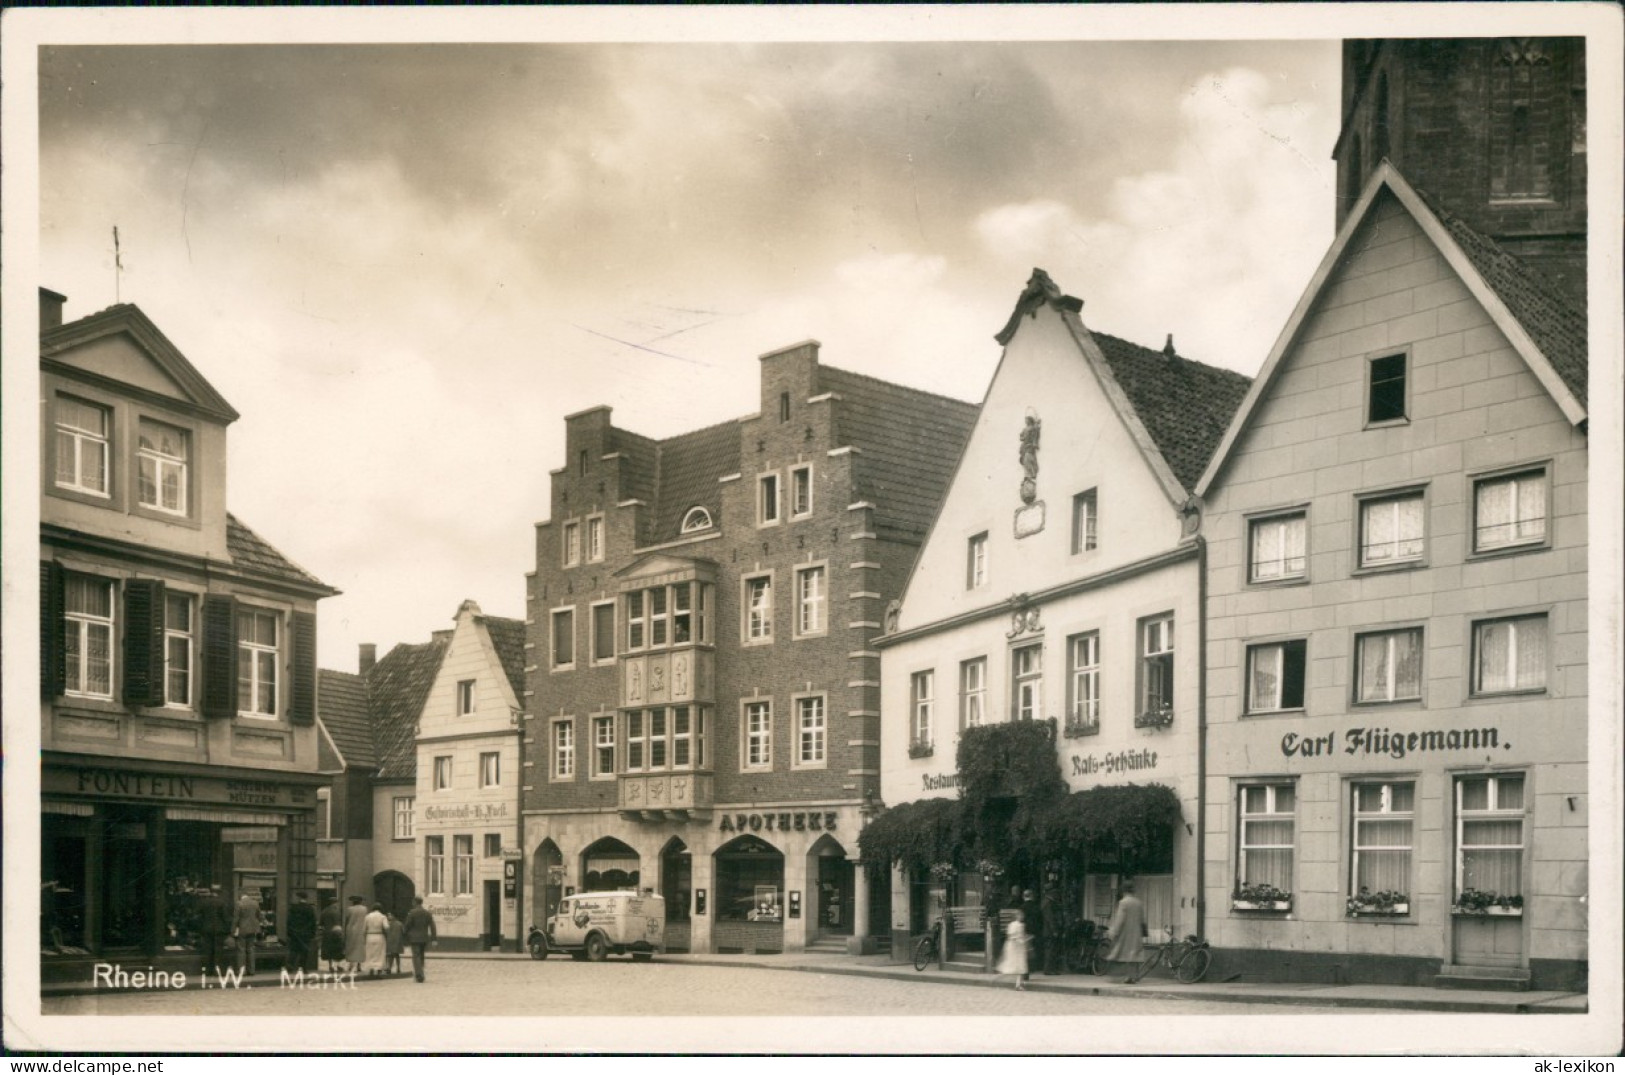 Ansichtskarte Rheine Markt, Apotheke, Rats-Schänke 1941 - Rheine